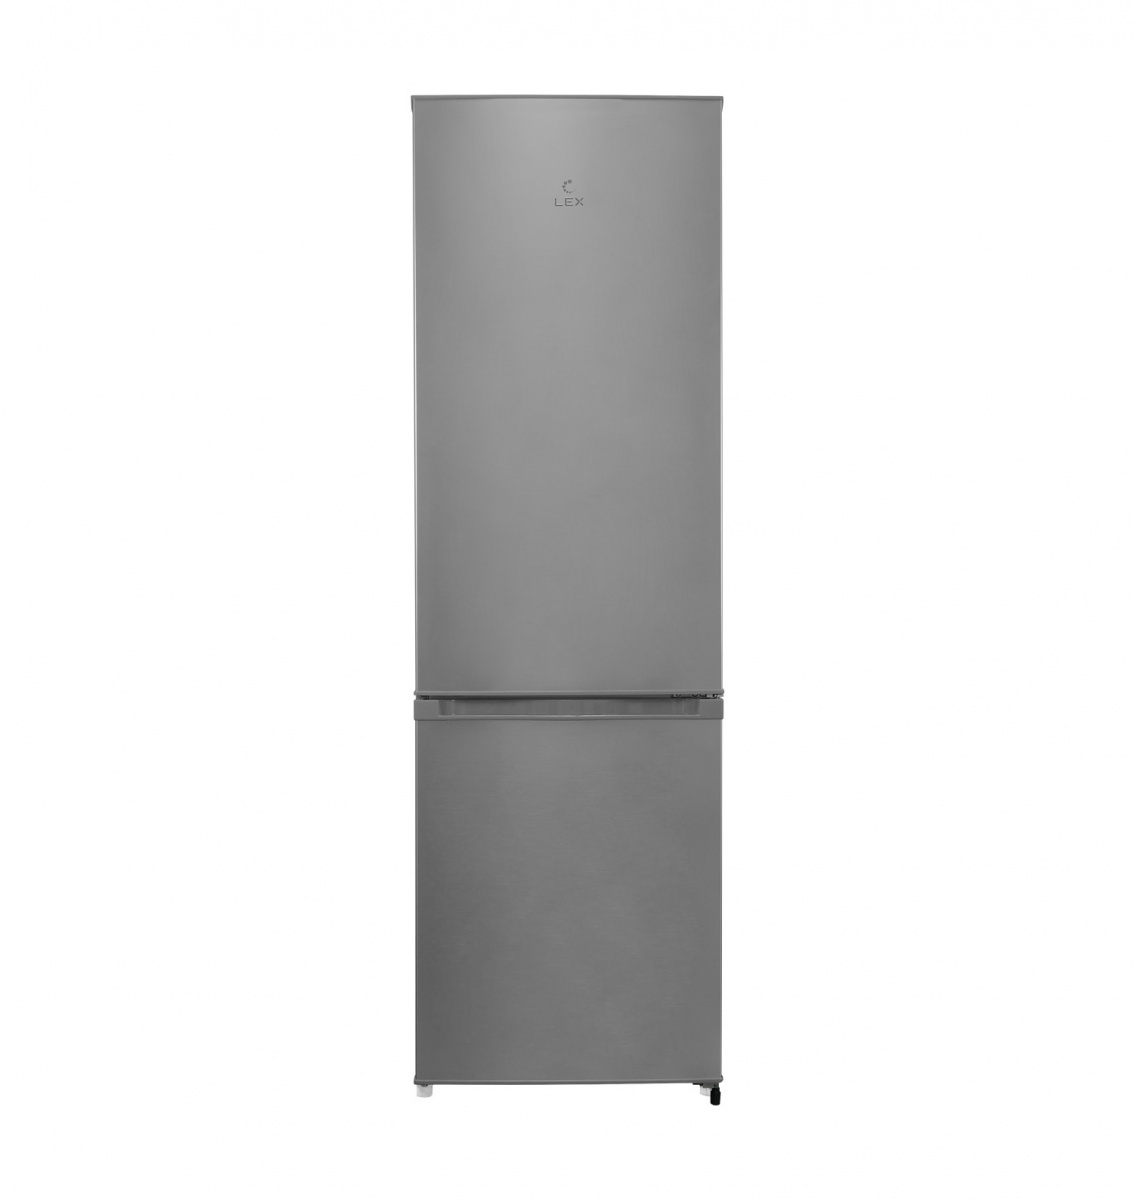 Двухкамерный холодильник lg no frost. Холодильник ATLANT хм 4626-149-ND. Холодильник LG ga-m429sarz. Атлант 4626-149-ND холодильник. Холодильник Hisense rb440n4bc1.